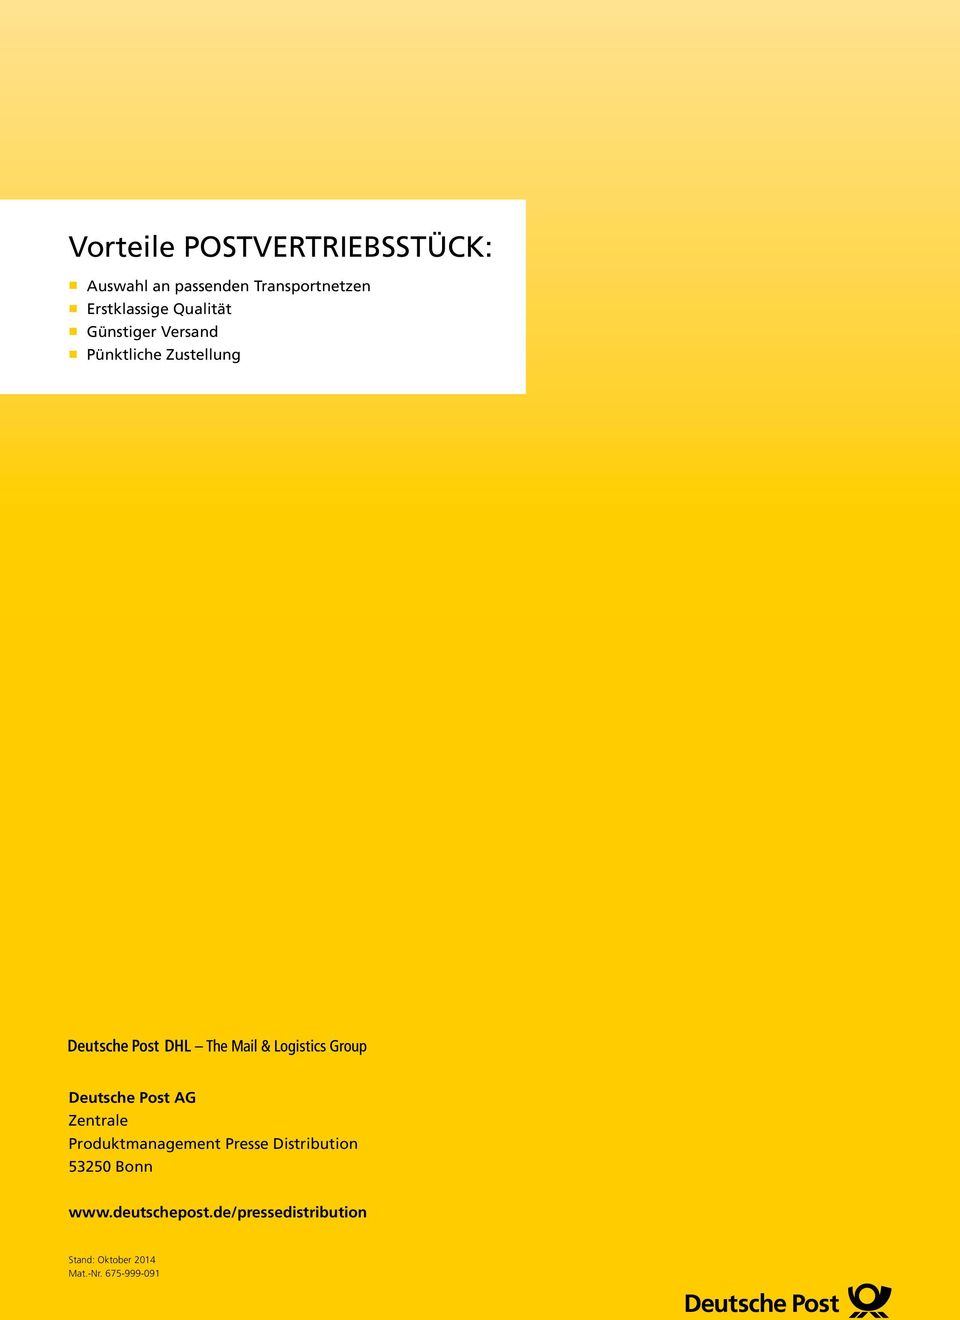 Post AG Zentrale Produktmanagement Presse Distribution 53250 Bonn www.